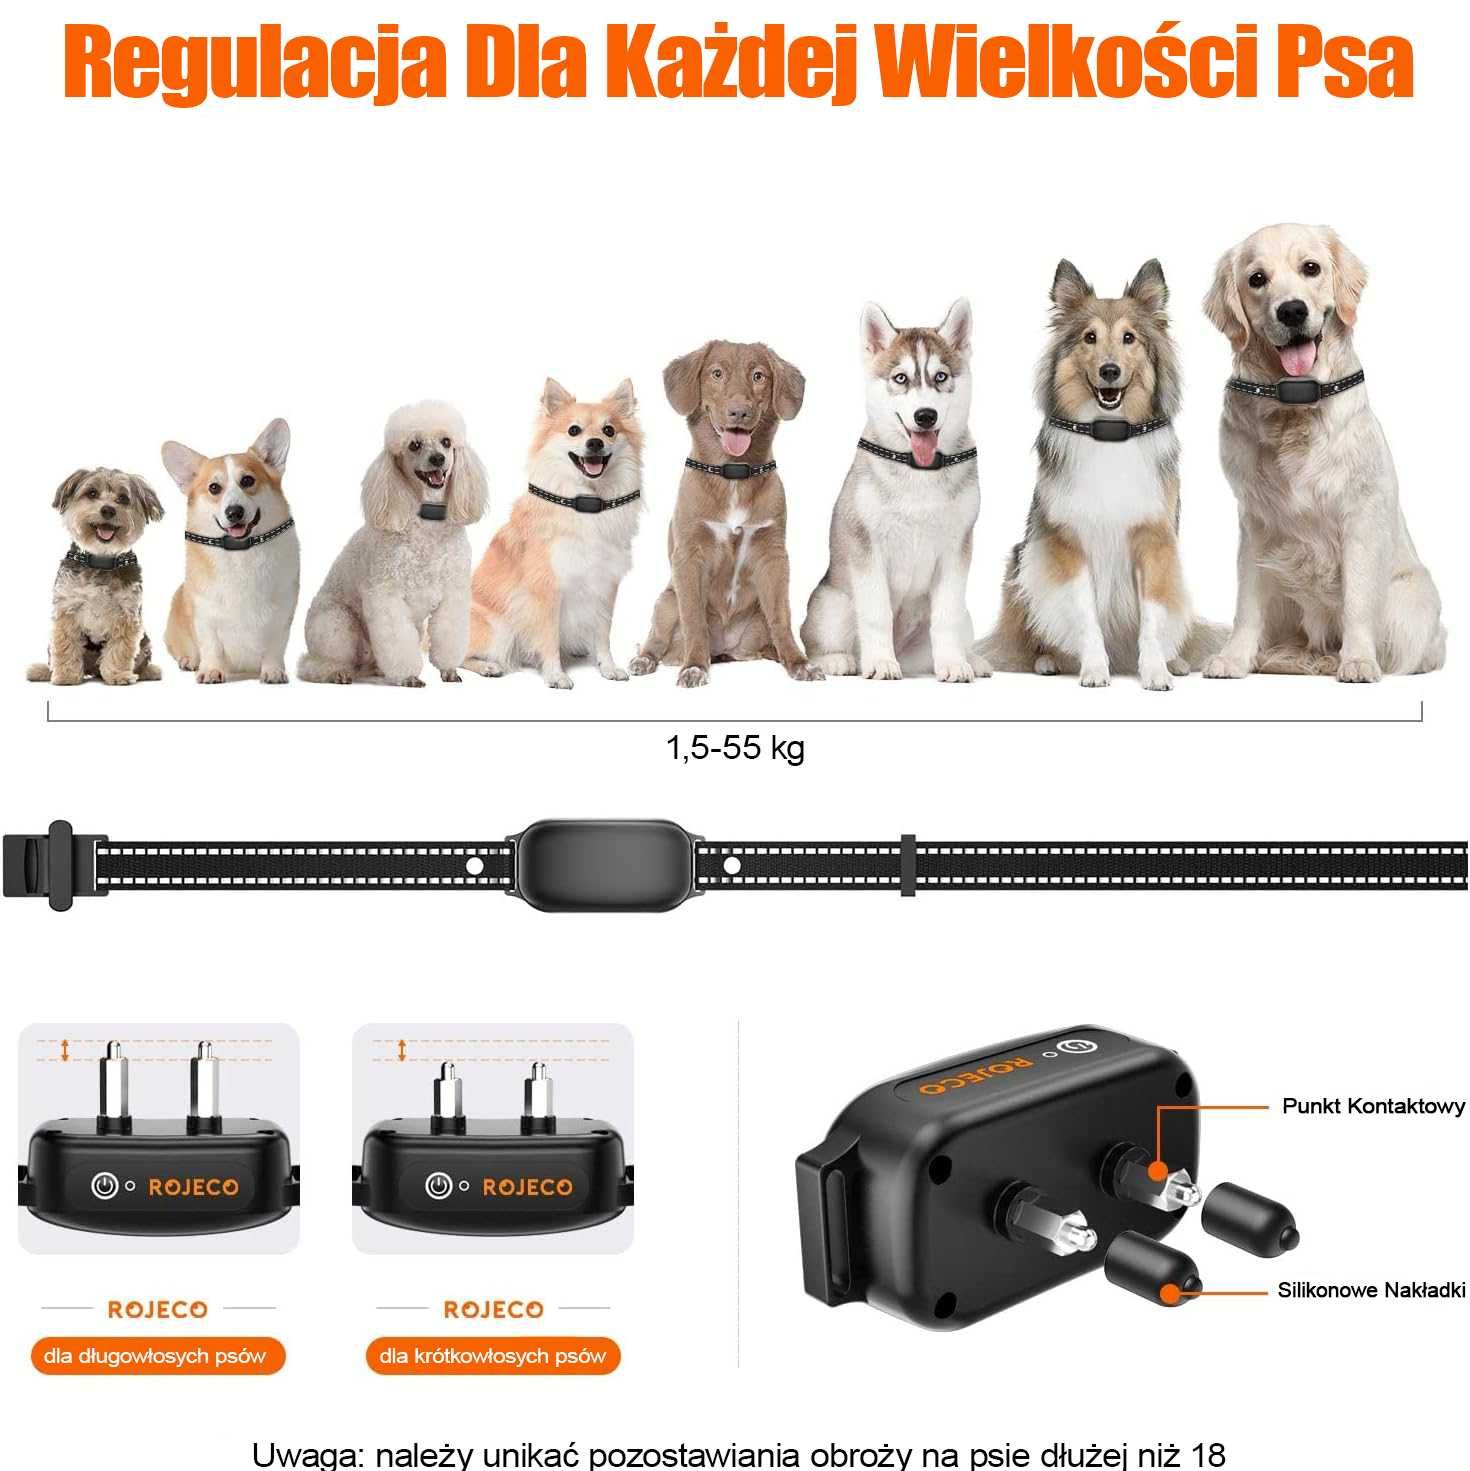 Obroża elektryczna treningowa do szkolenia psa ROJECO